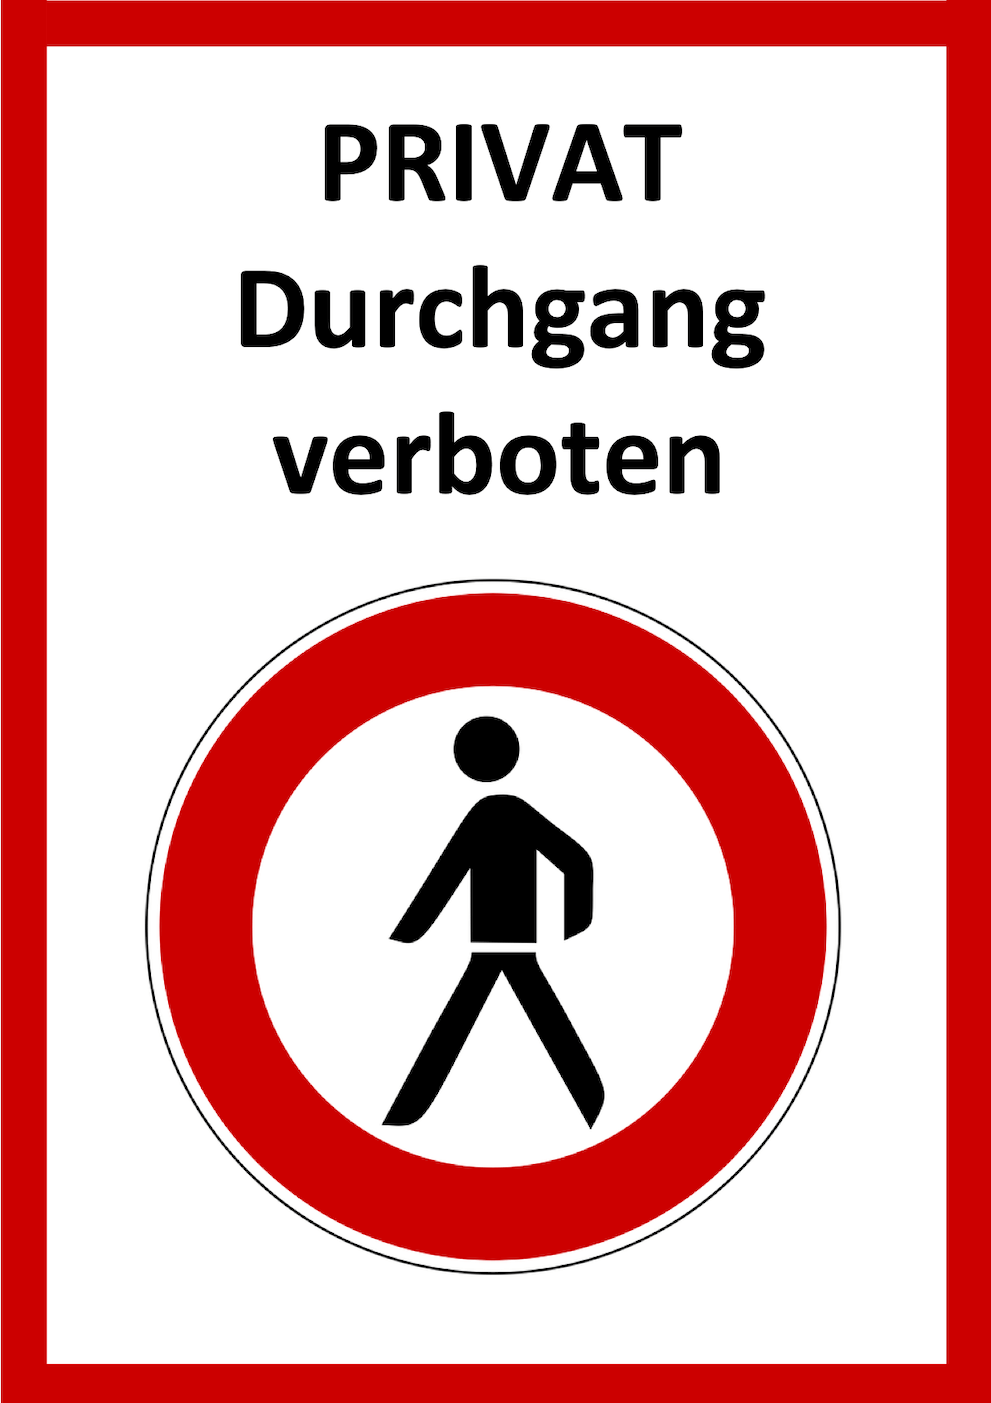 Durchgang verboten Schild